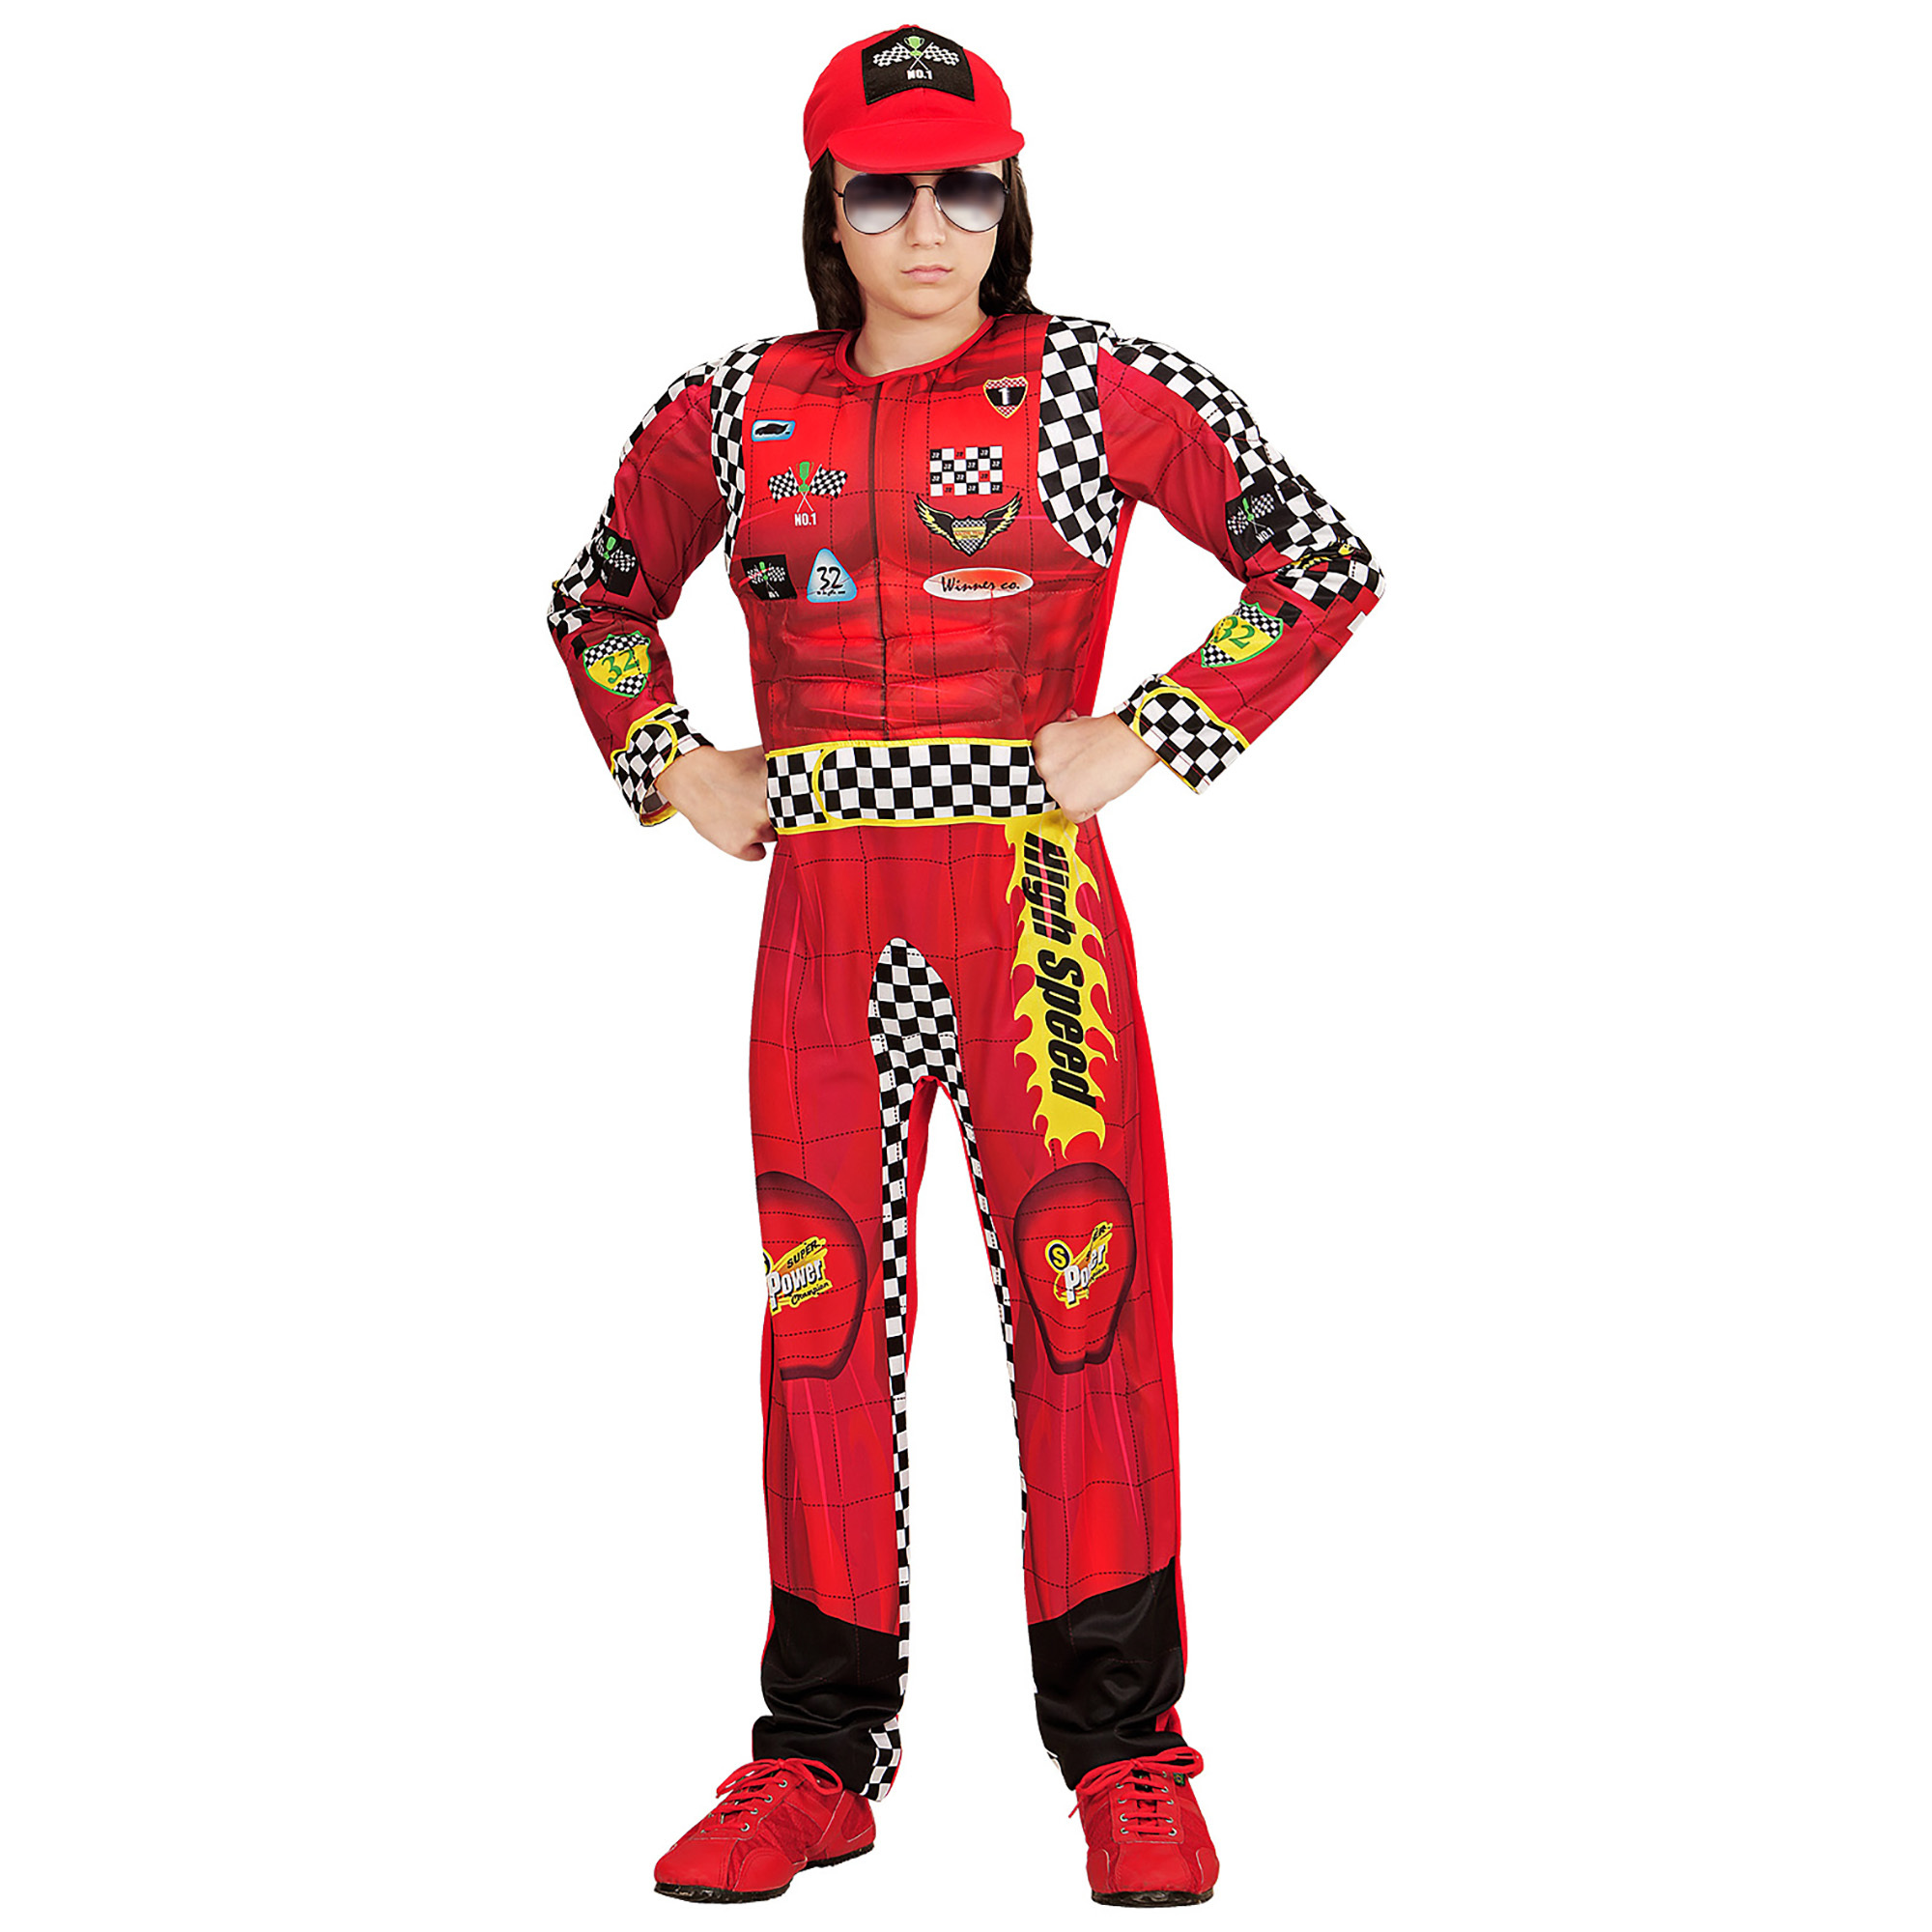 Auto coureur race  kostuum kind outfit